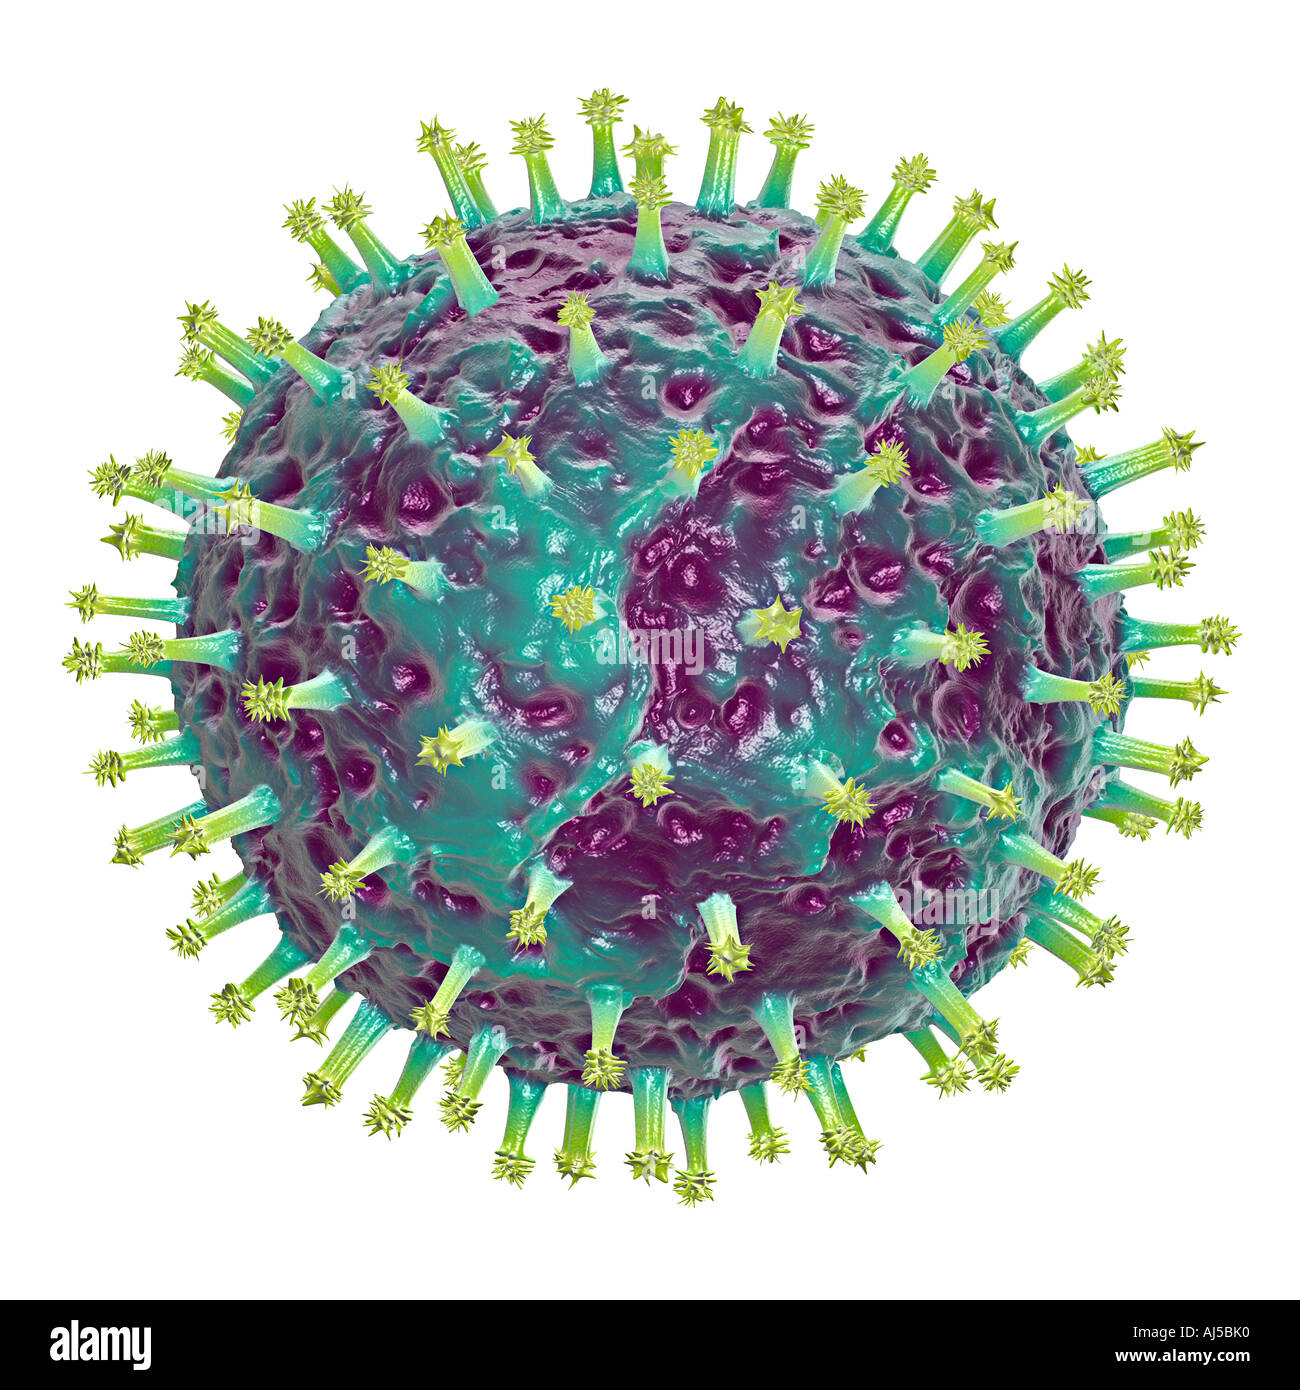 Illustrazione del simbolo del virus della malattia di infezione epidemia di peste la peste minaccia pericolo scienza pandemia pandemia Foto Stock